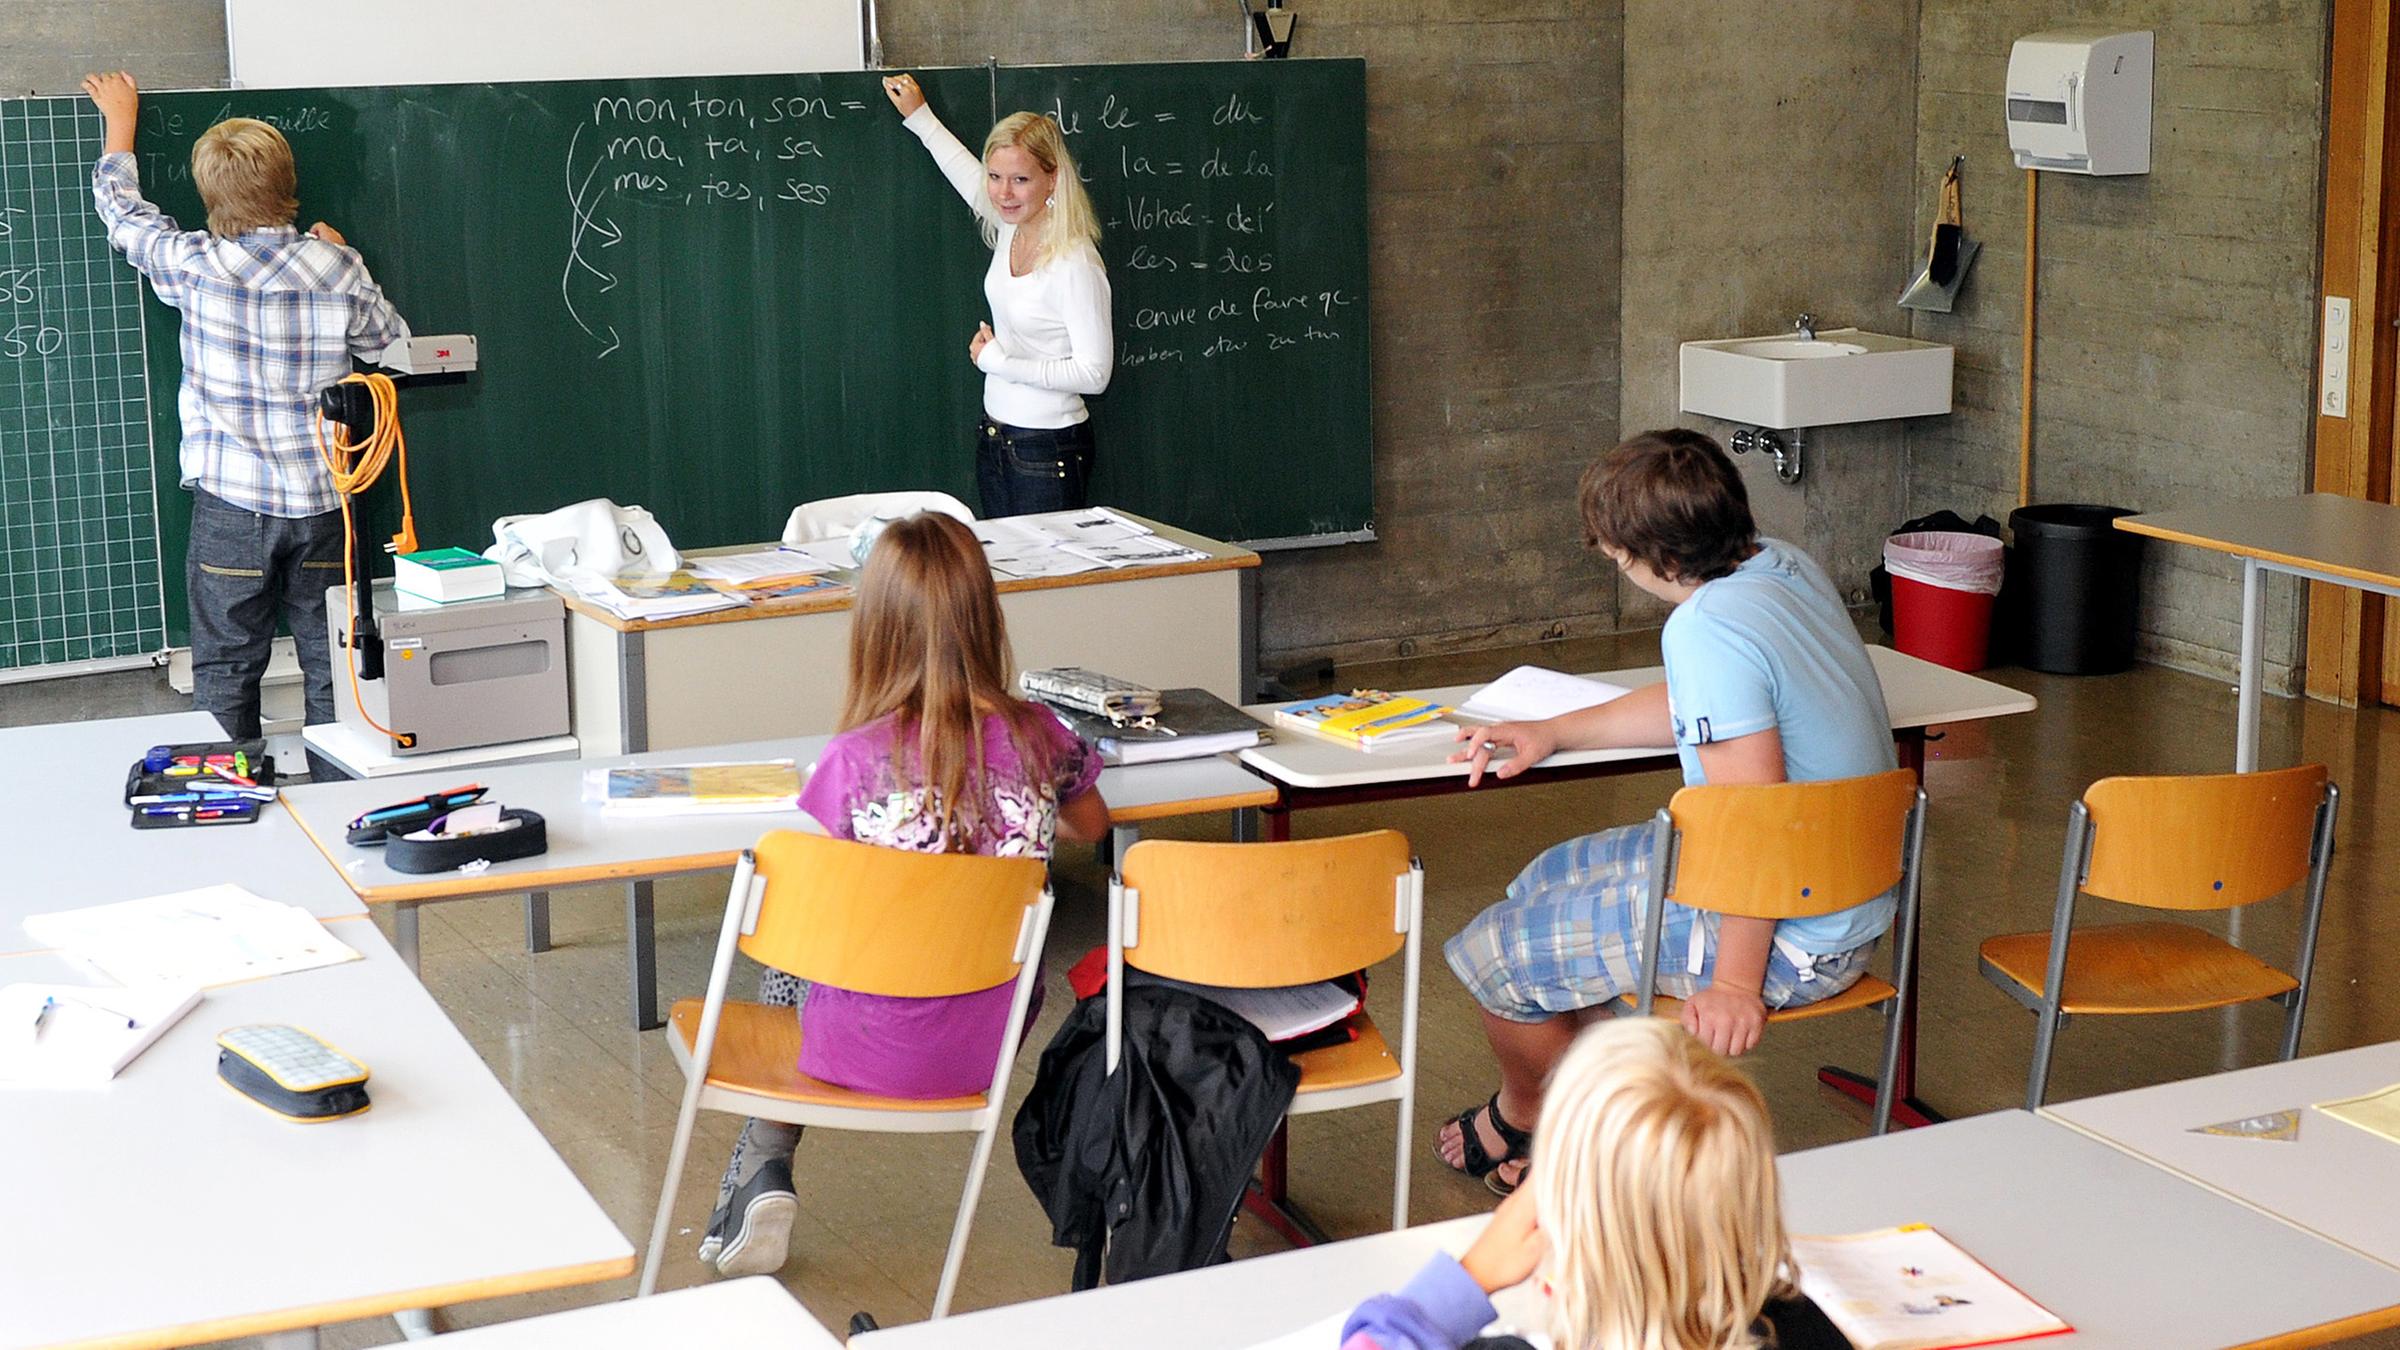 Maria gibt am Donnerstag (05.08.2010) in Münsingen (Kreis Reutlingen) im Gymnasium Französischunterricht